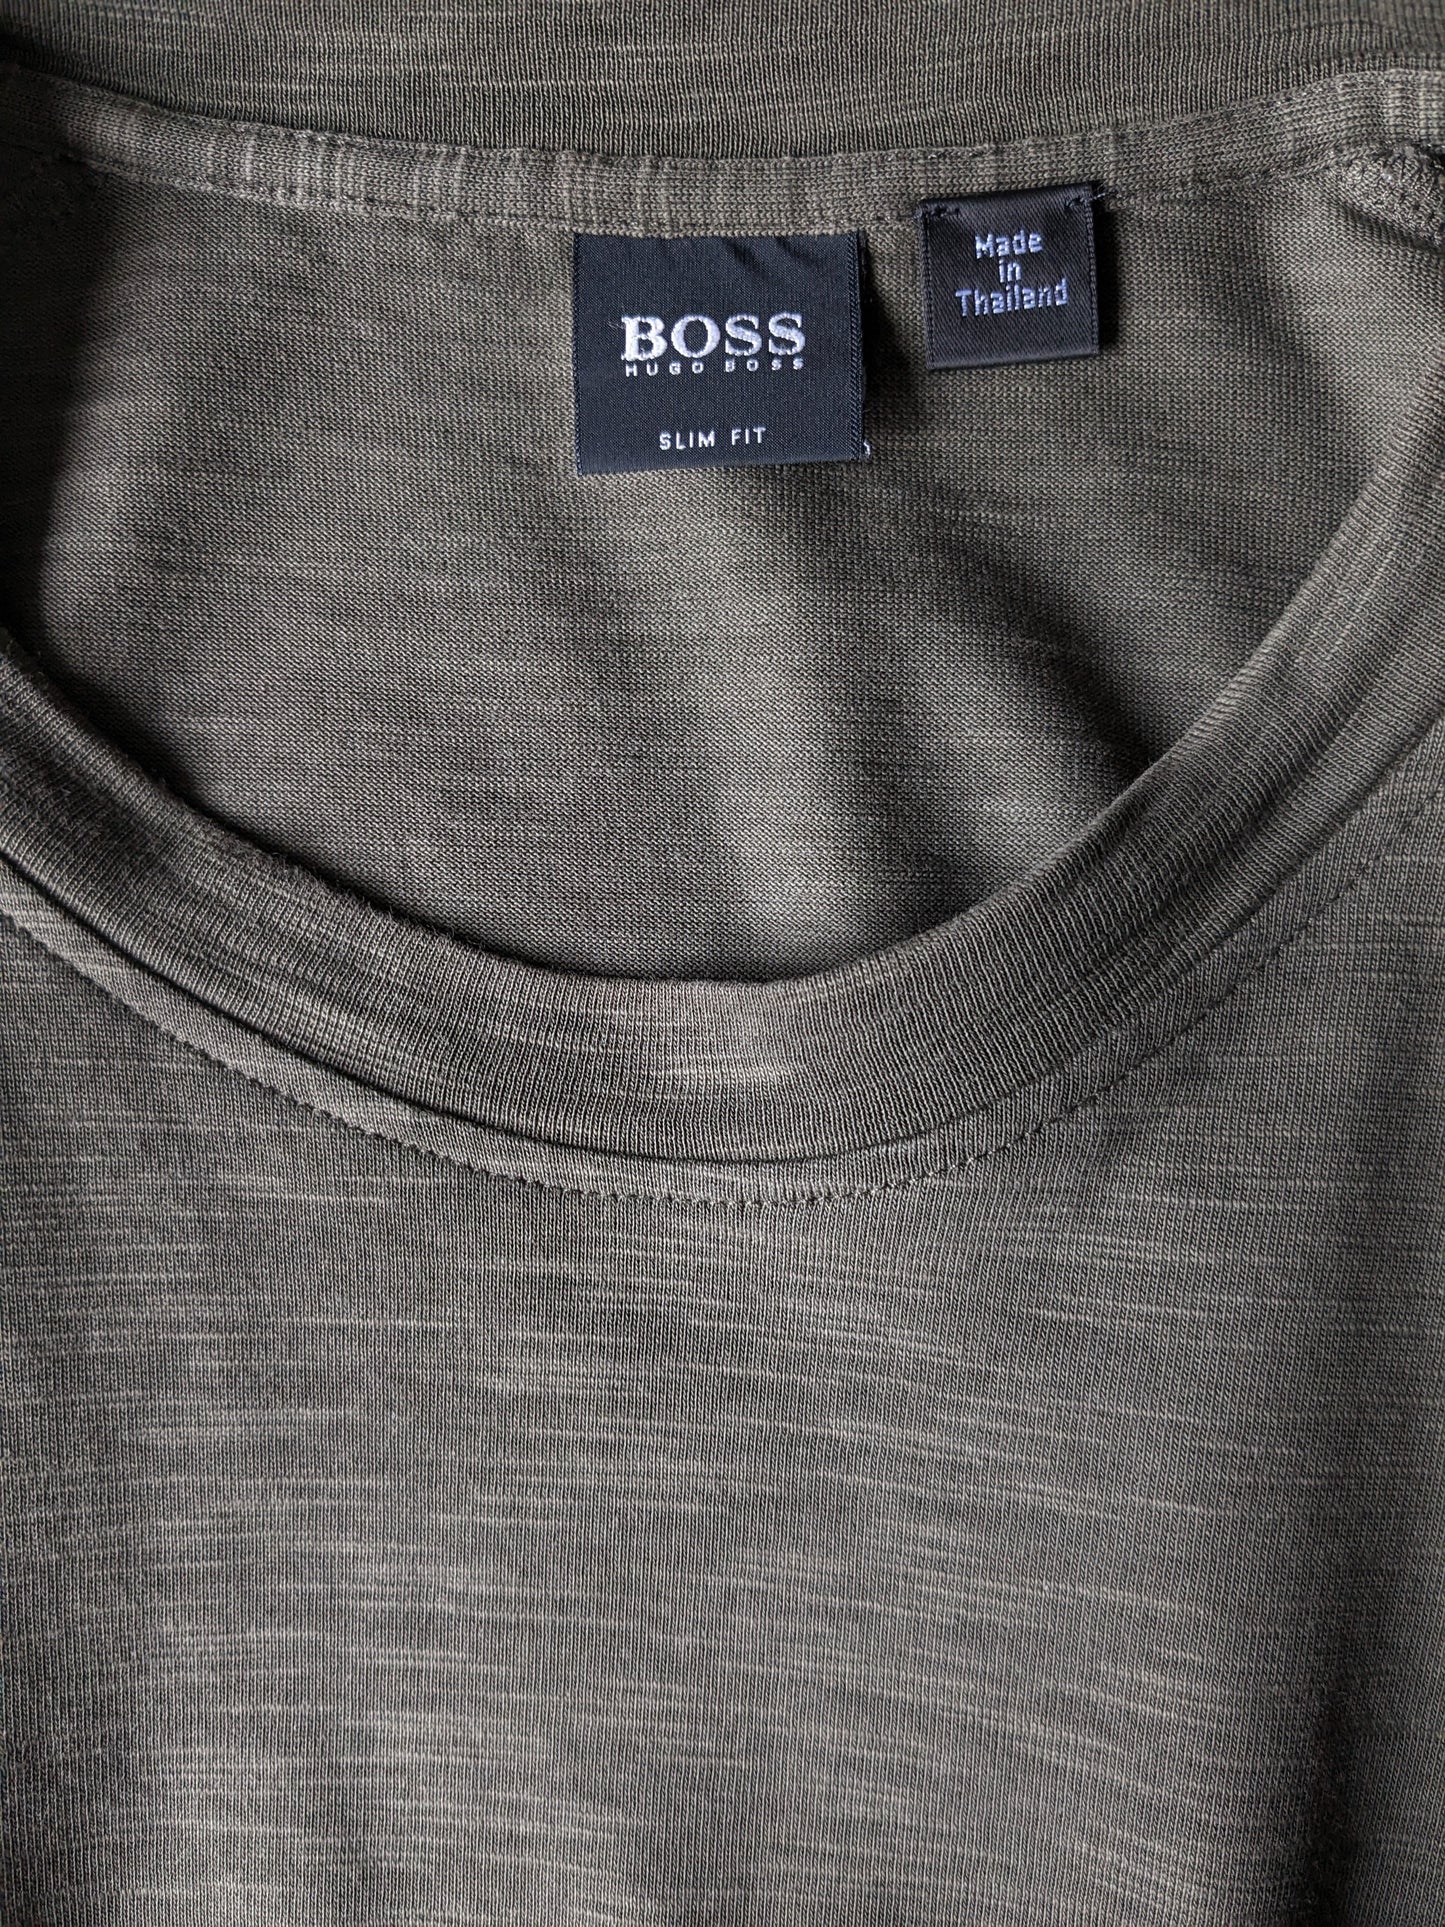 Boss Hugo Boss Longsleeve. Green motif. Size S. Slim Fit.